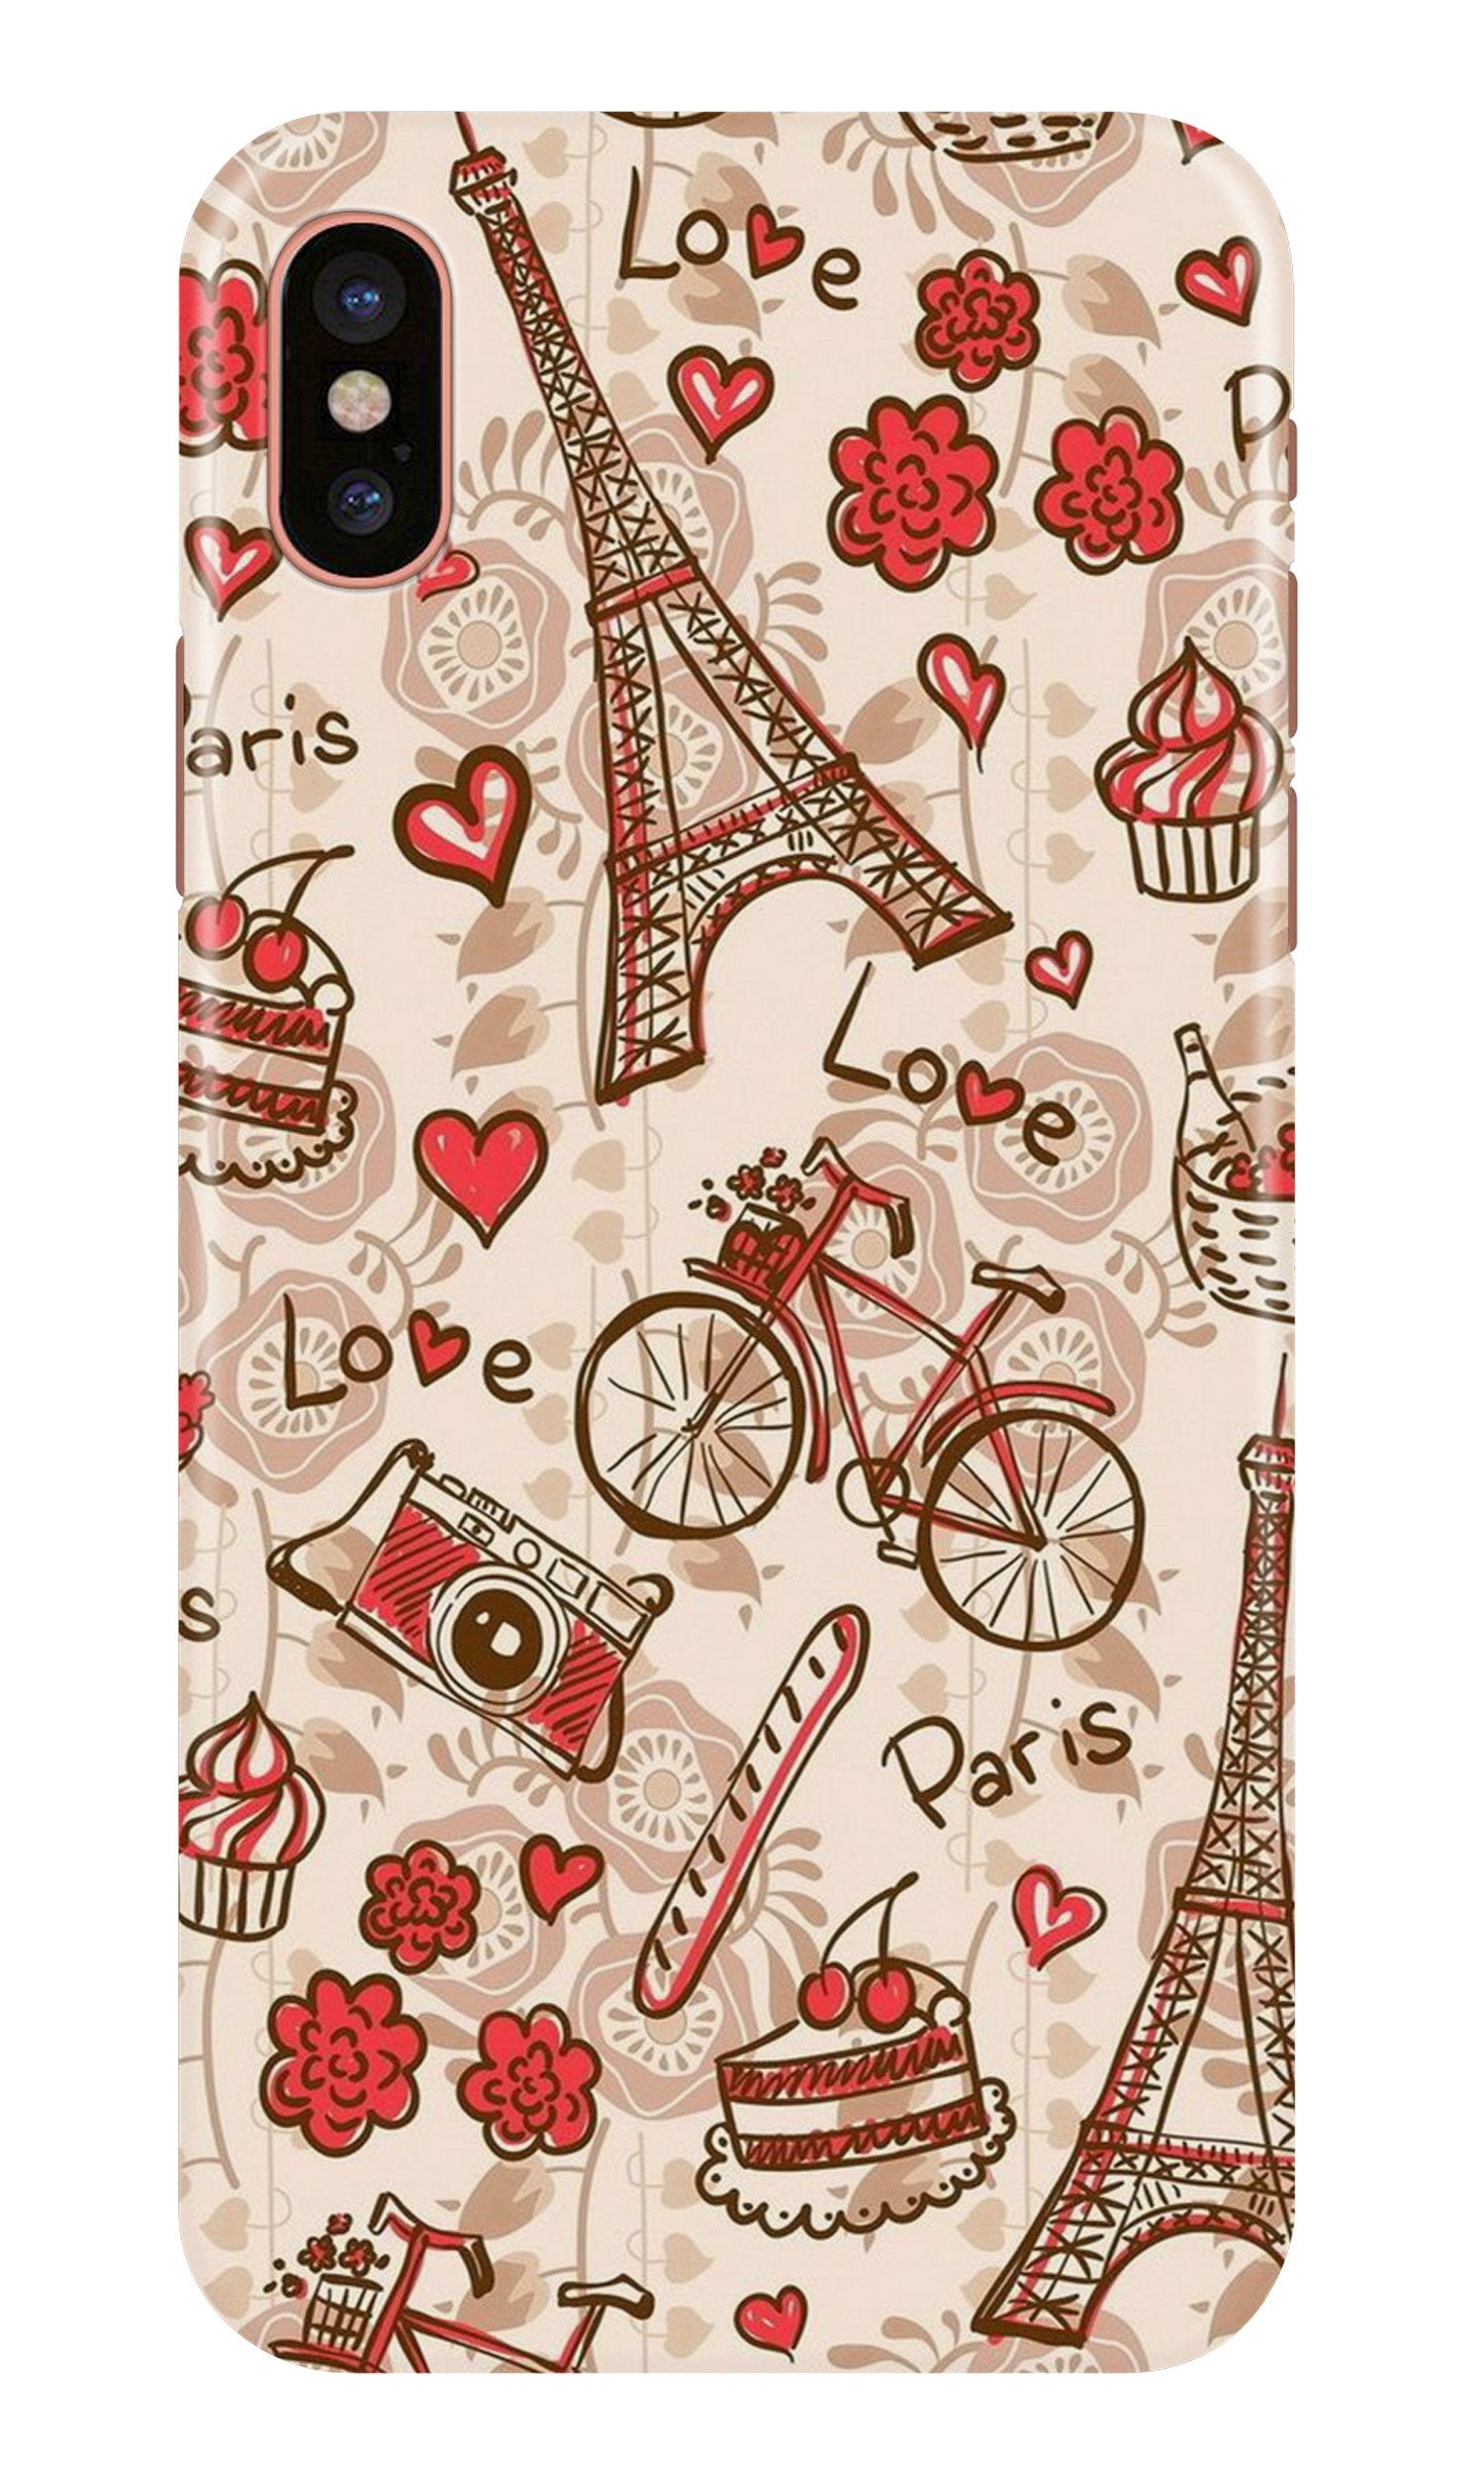 Love Paris Case for iPhone X(Design - 103)